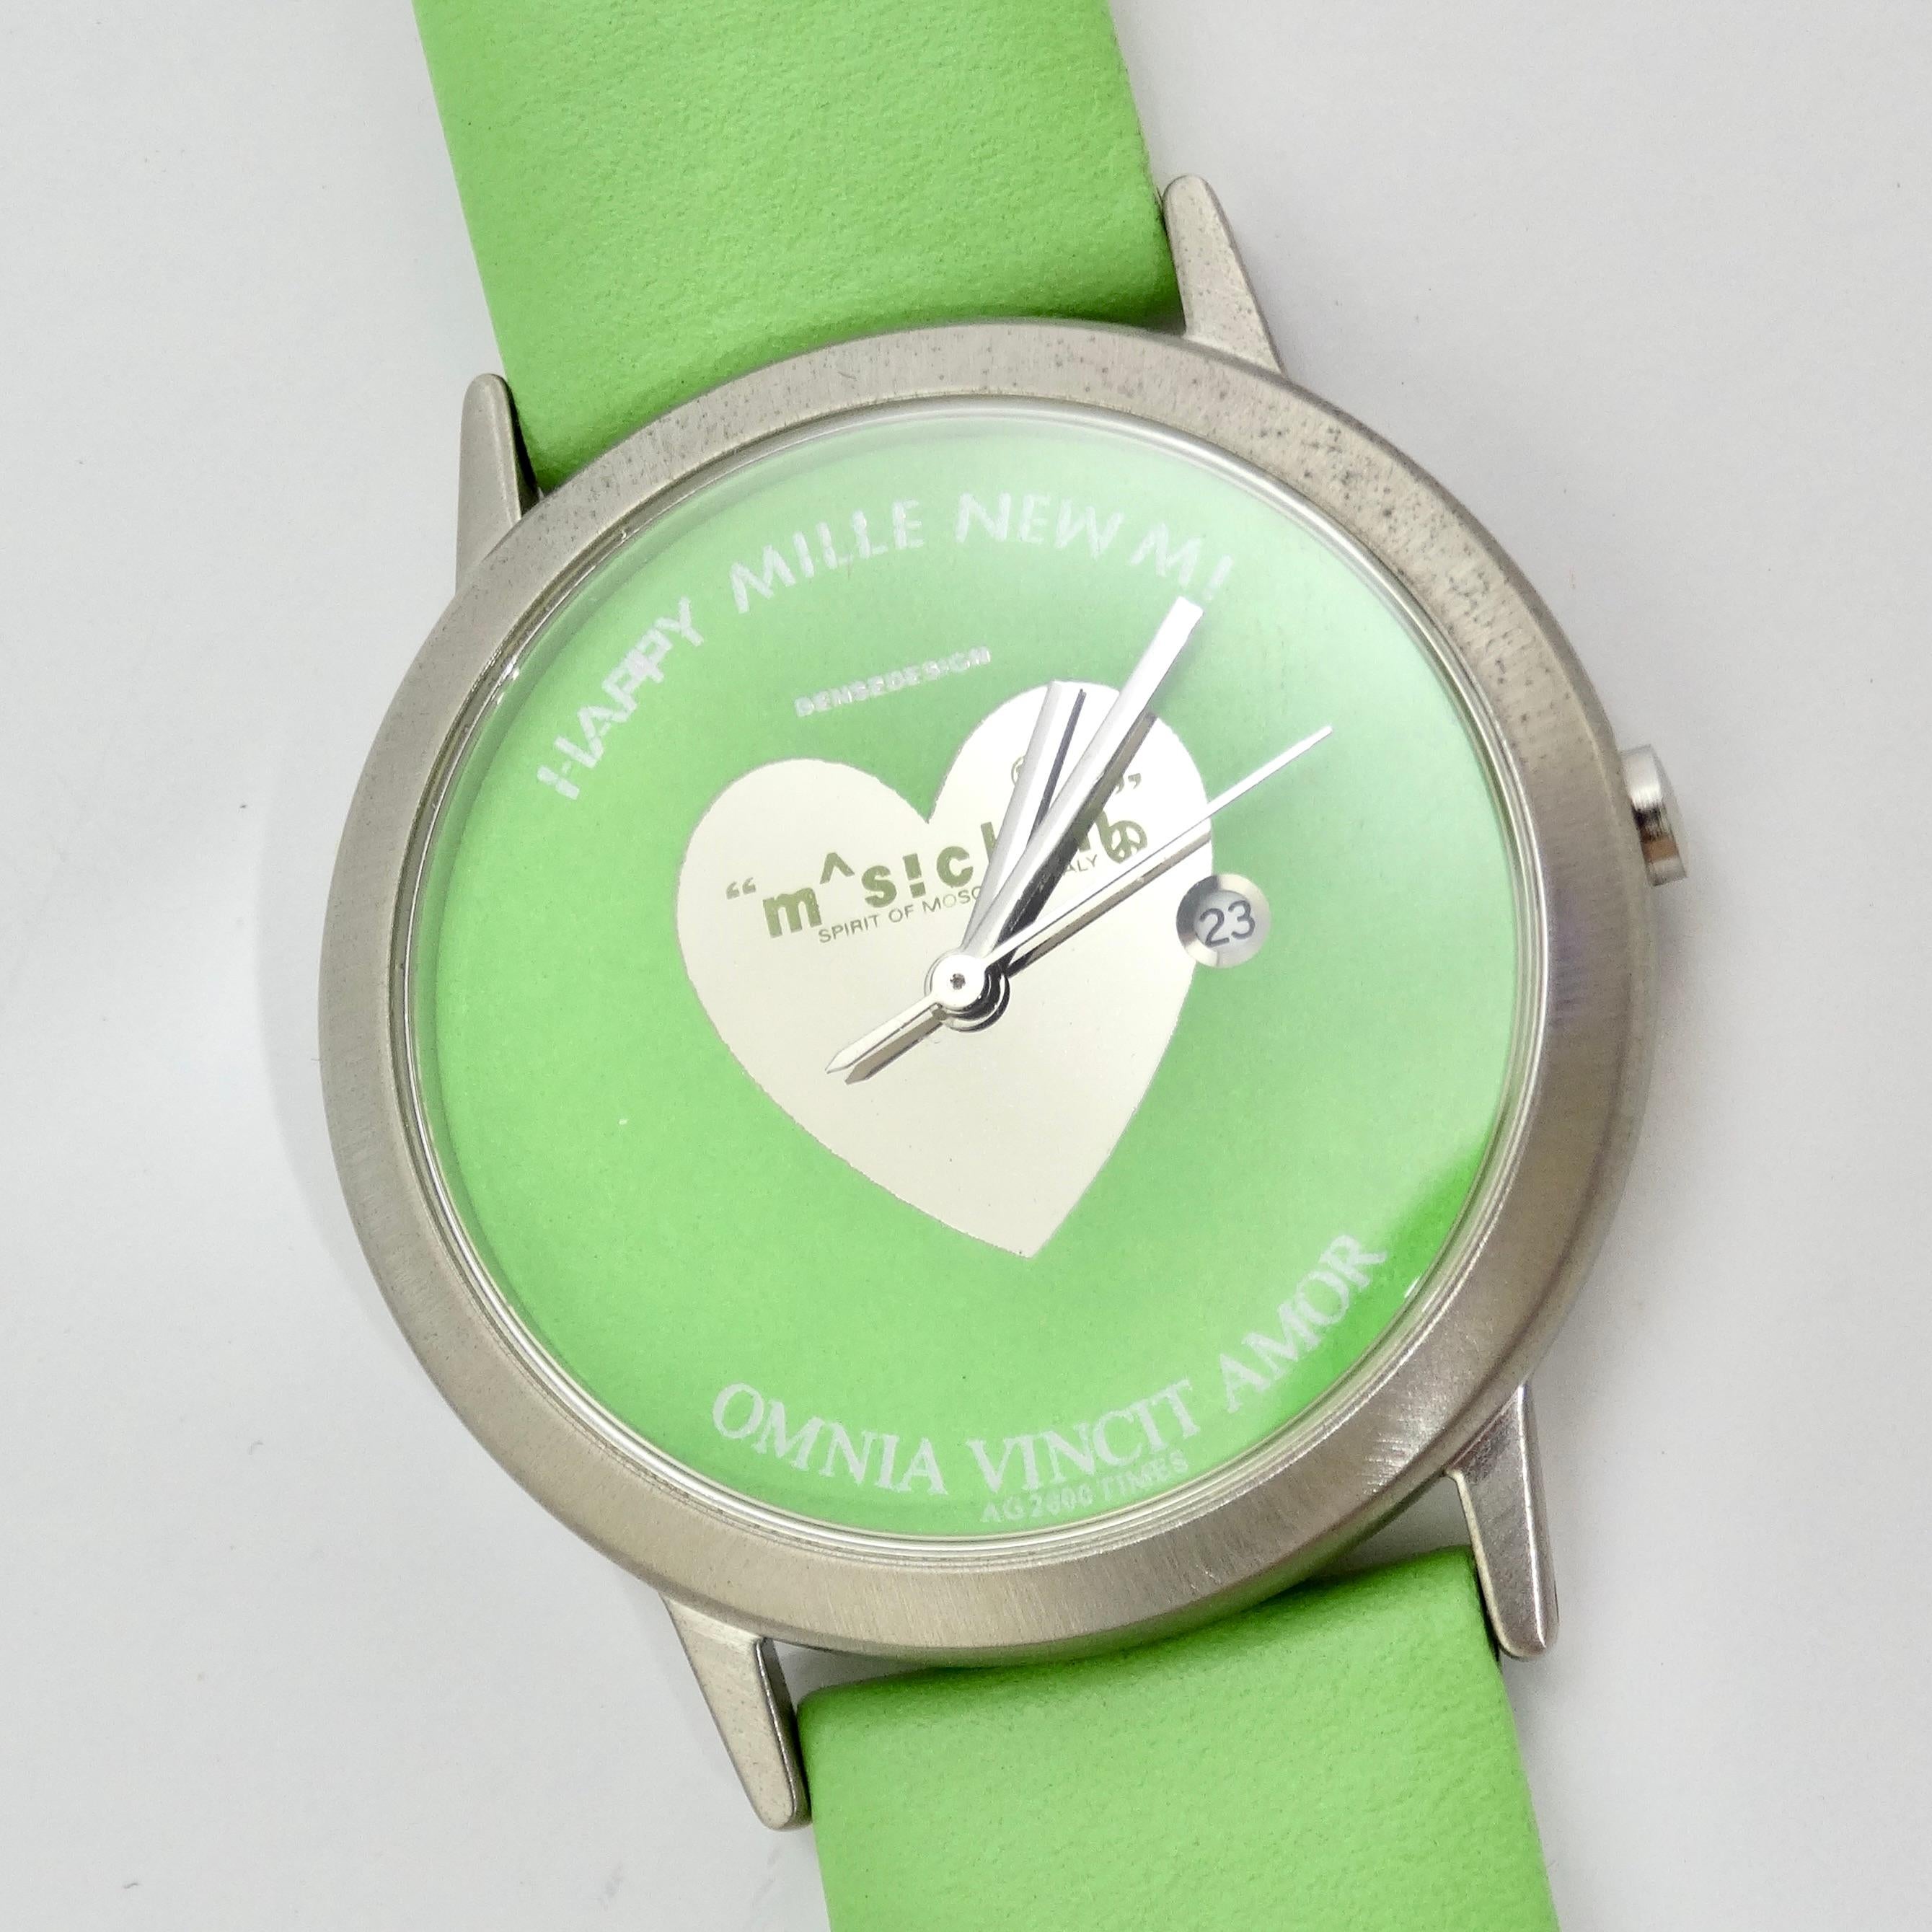 Voici l'adorable montre vintage en cuir vert de Moschino, une délicieuse pièce d'horlogerie qui dégage un charme ludique et un style vibrant. Cette montre unique est dotée d'un bracelet en cuir vert vibrant qui ajoute une touche de couleur à